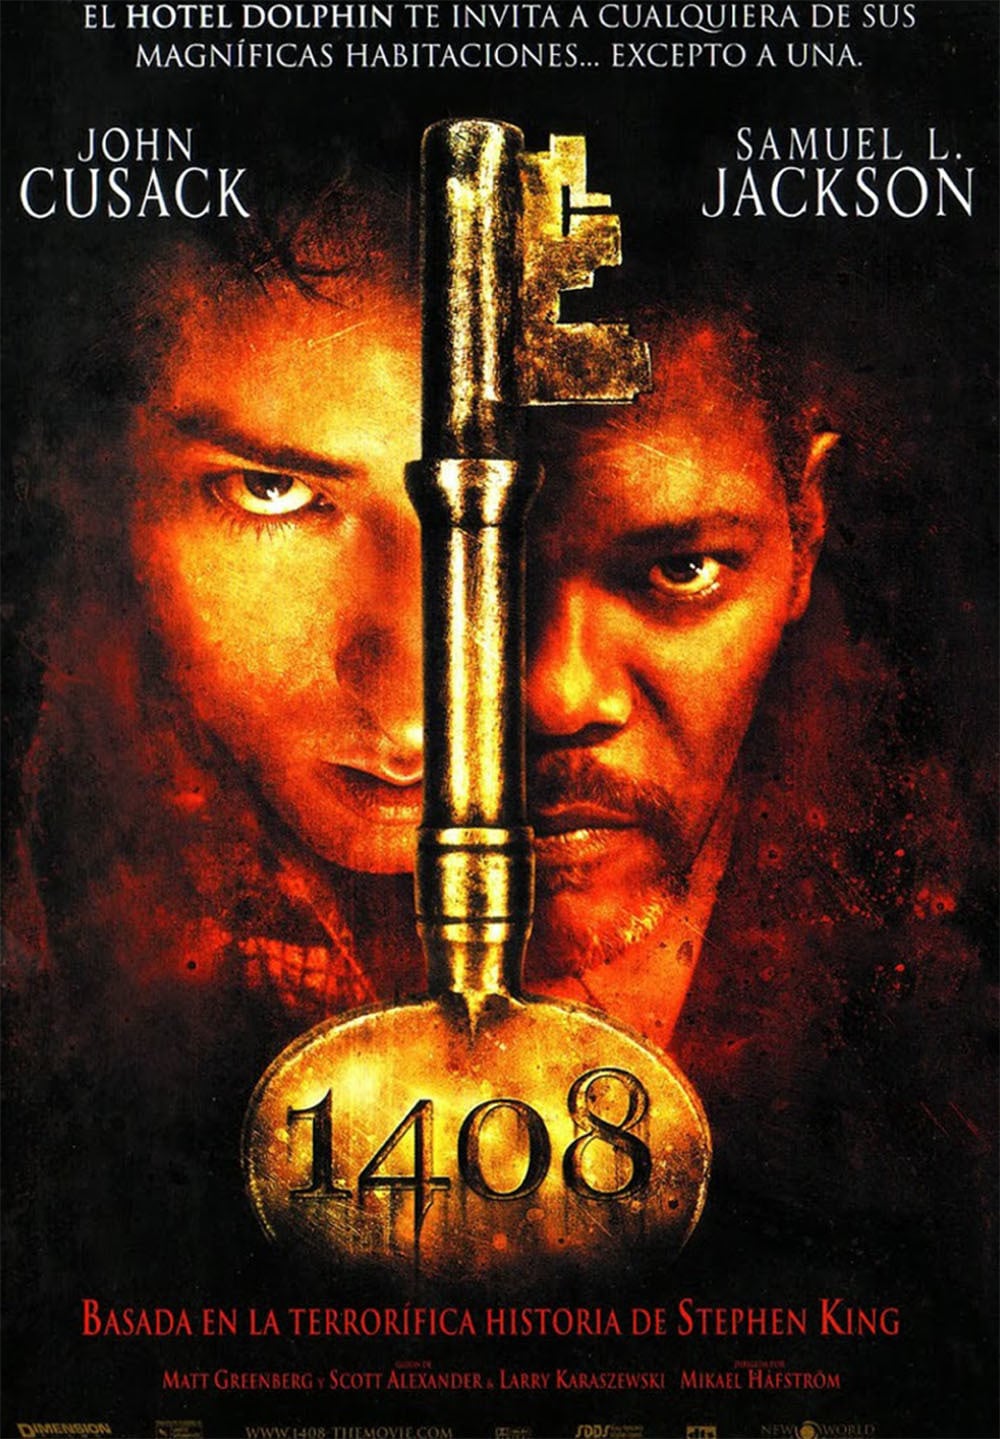 1408 [Режиссерская версия] / 1408 [Director's Cut] (2007) MP4